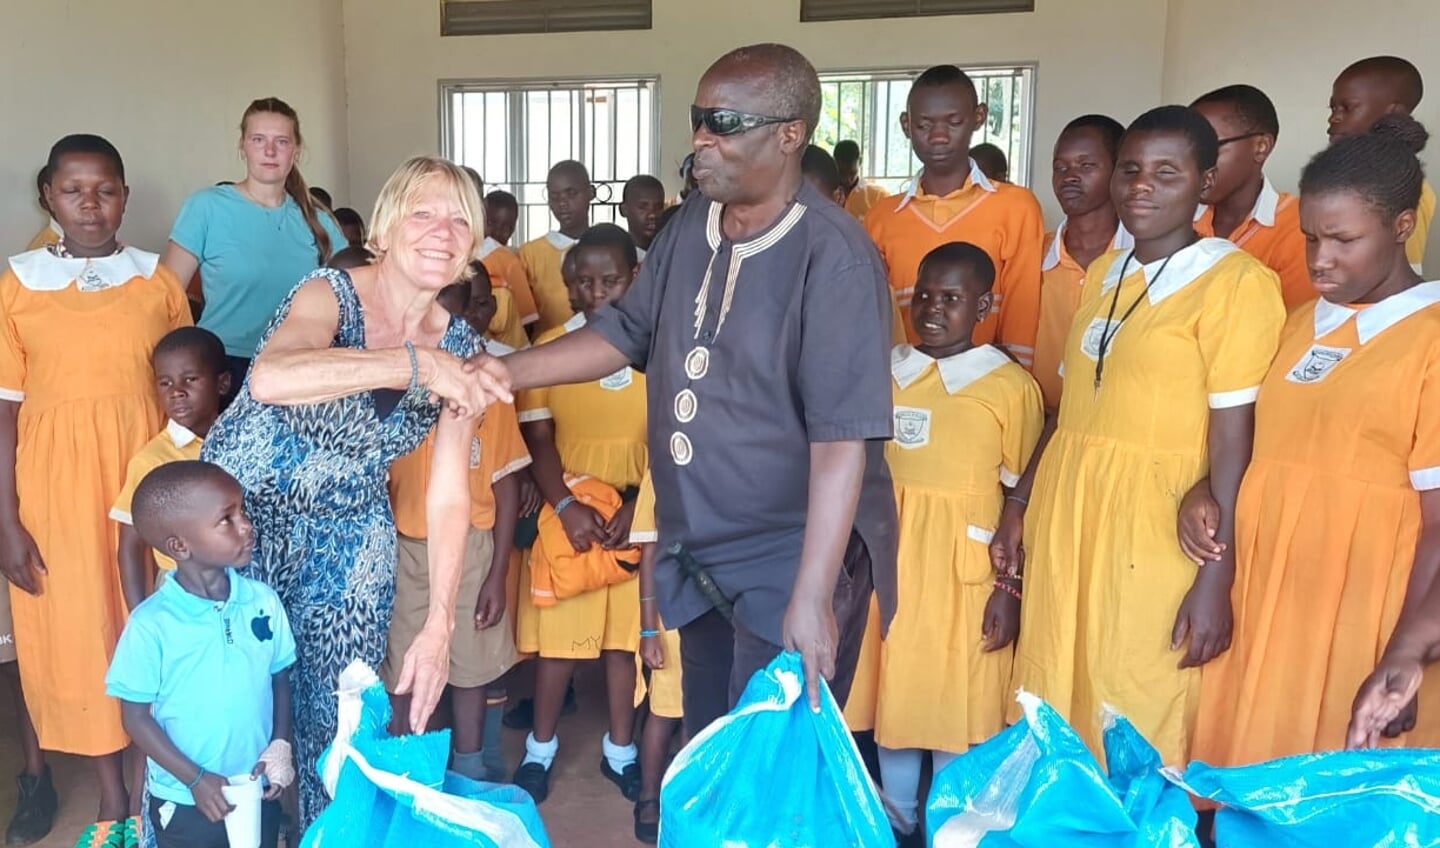 Foto gemaakt tijdens het verblijf van Hennie Krommenhoek bij de school in Oeganda.